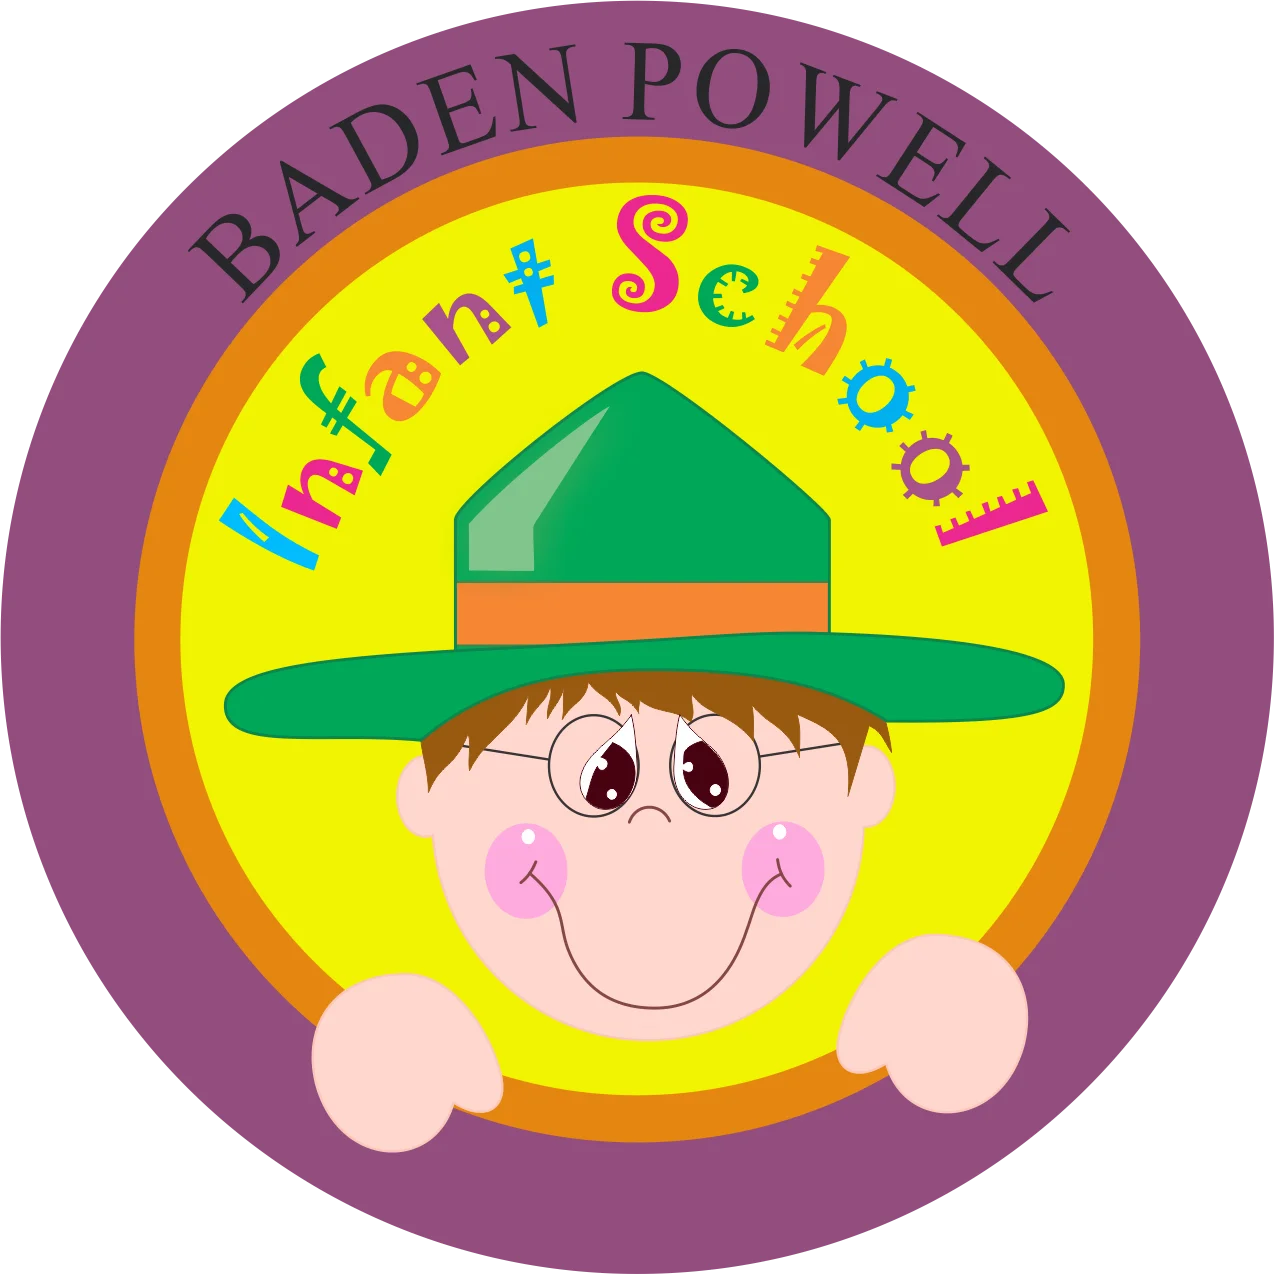 Colegio Baden Powell - Infant School